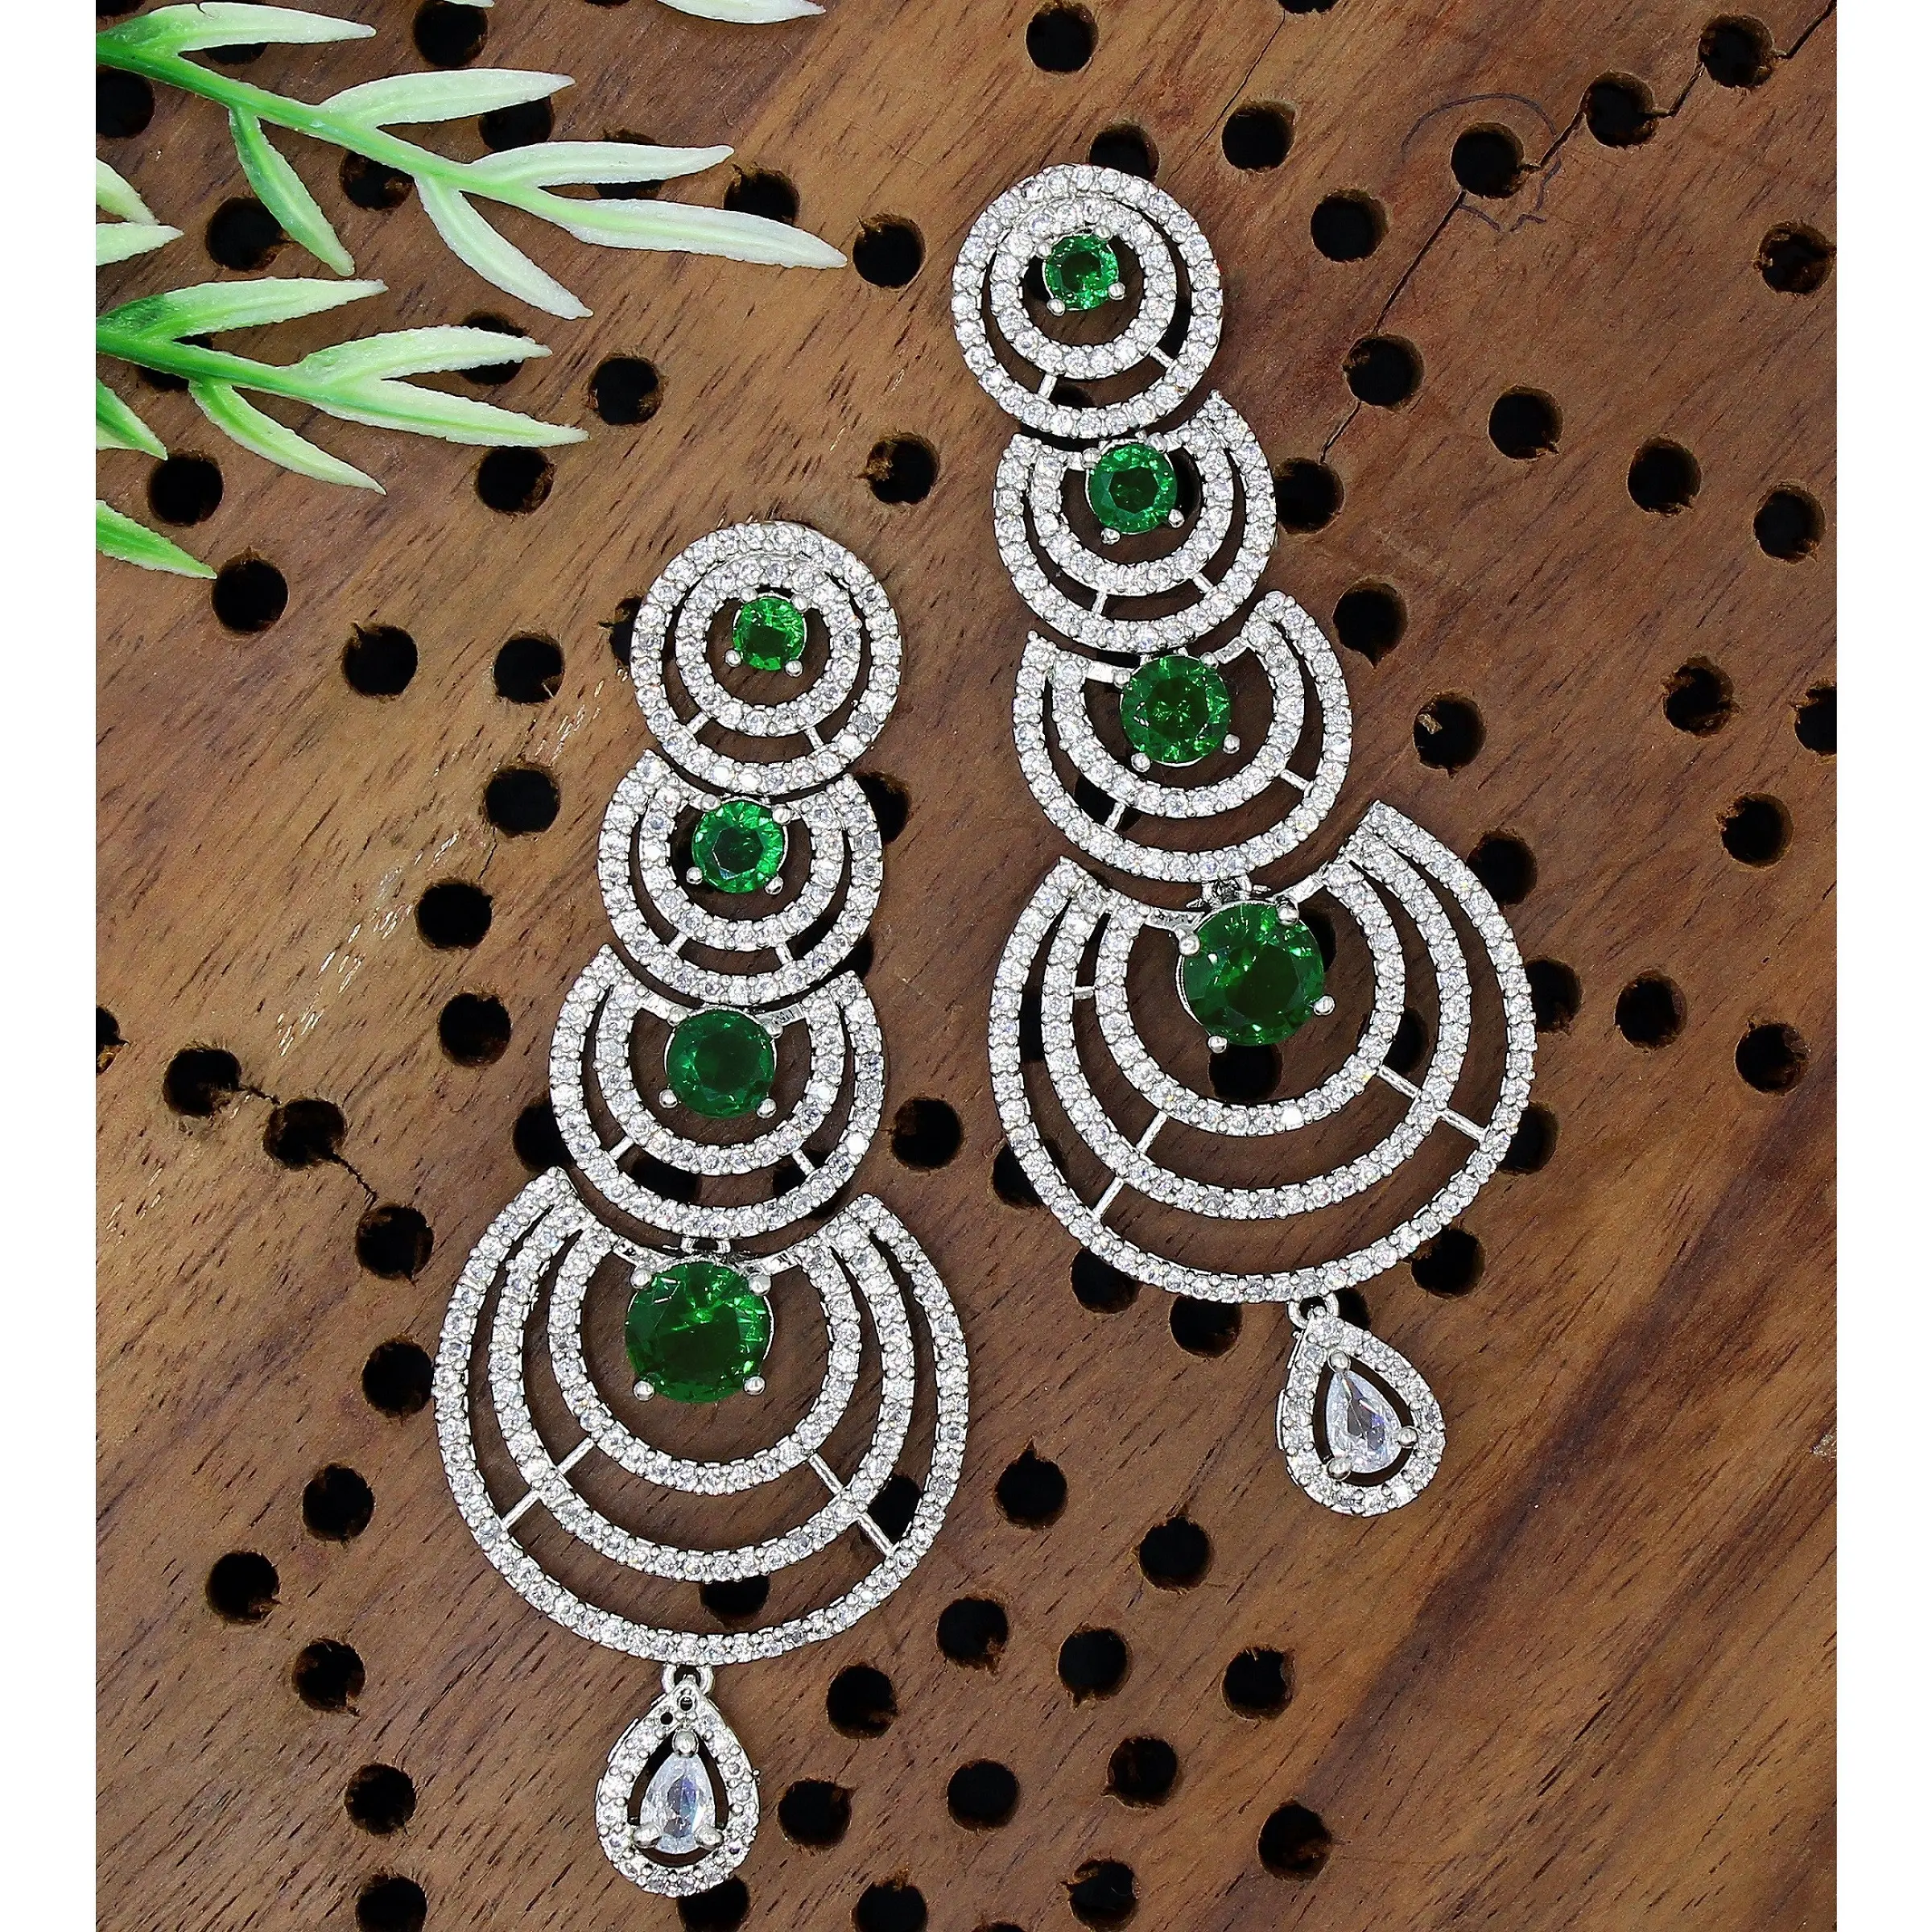 الماس الأمريكي قرط هندي ذهبي تقليدي على الموضة الأوروبية الأمريكية مجوهرات كريستالية من الألماس